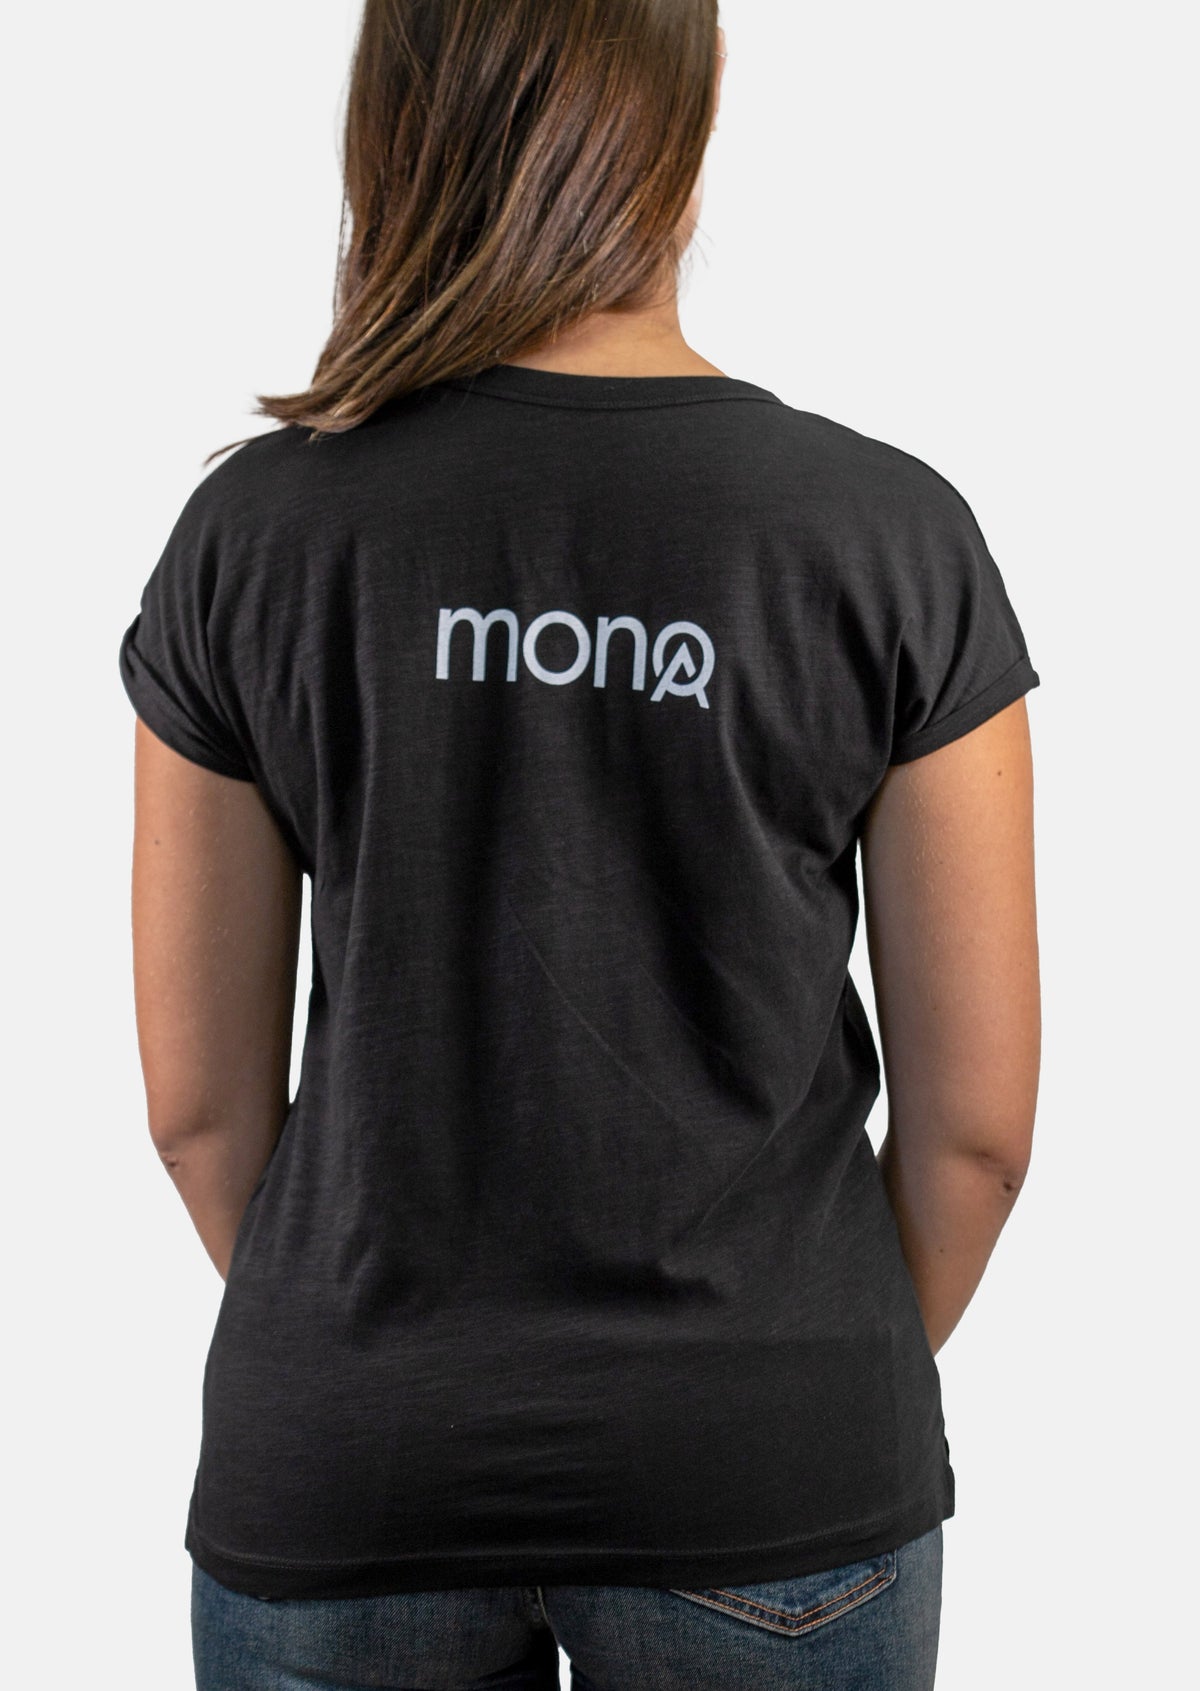 Women's MONOA T-shirt